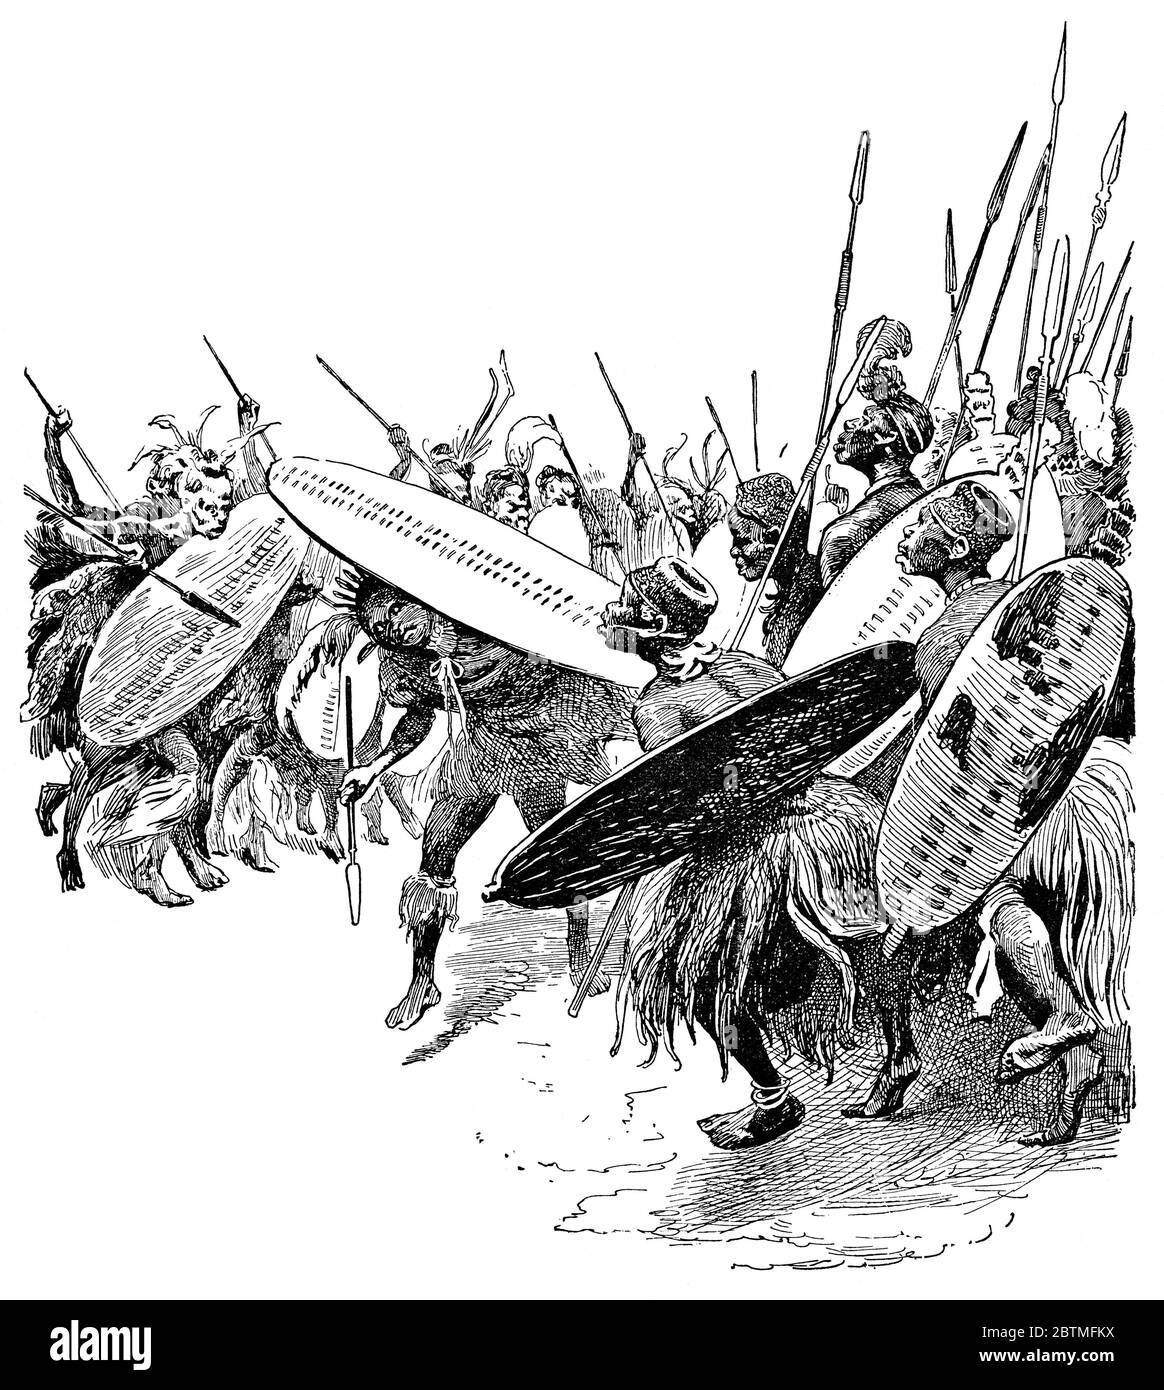 Les Zulu dansent les guerriers traditionnels. Illustration du XIXe siècle. Fond blanc. Banque D'Images